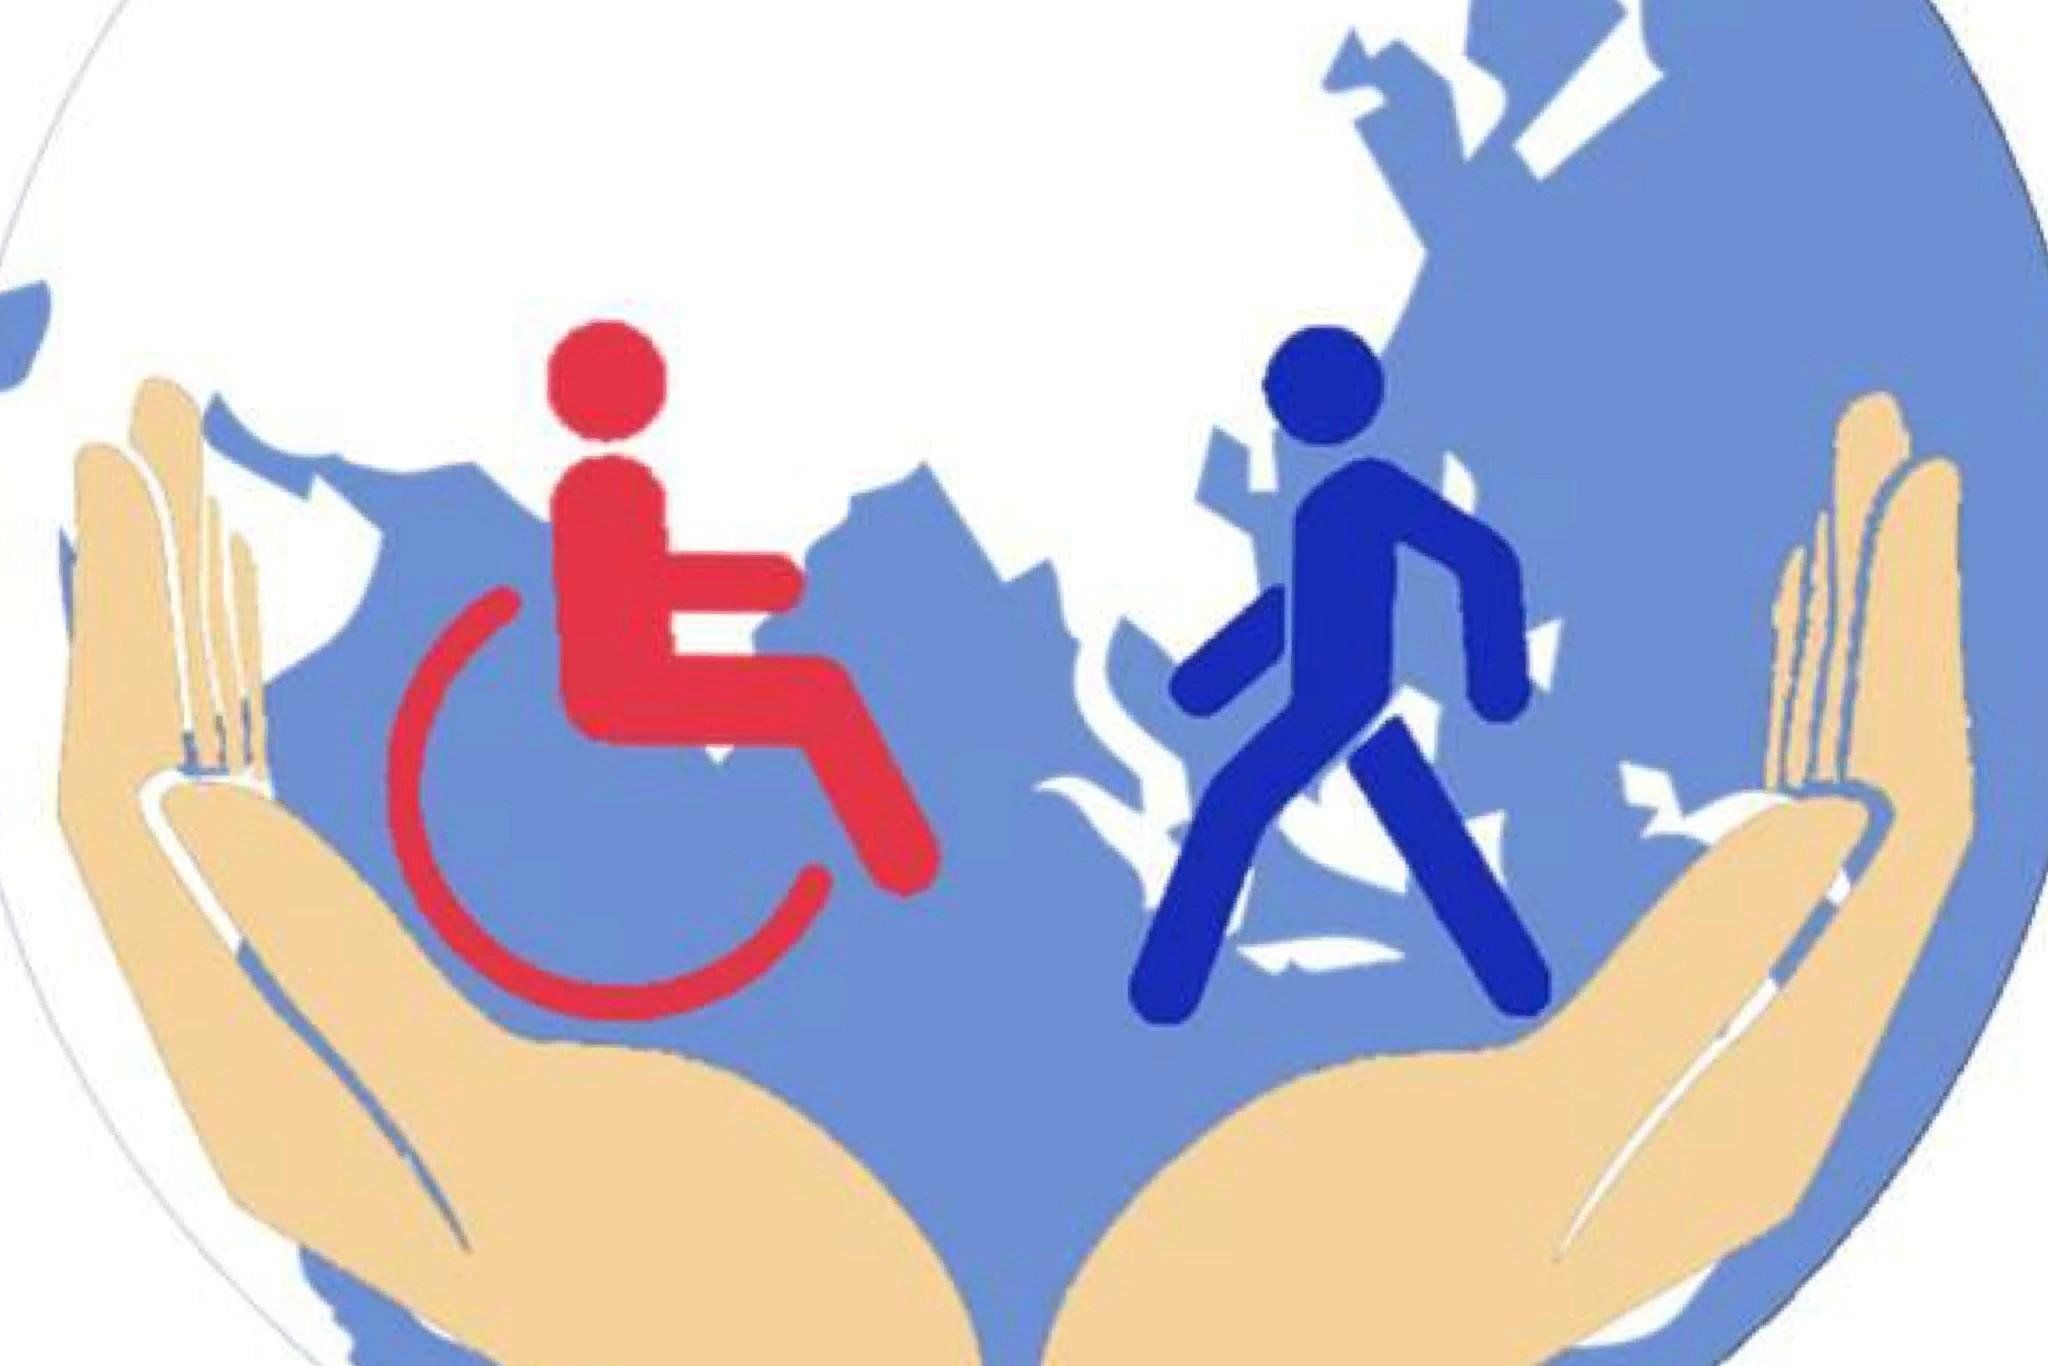 Инвалидность проблема общества. Защита инвалидов. Соц защита инвалидов. Инвалиды в социуме. Социальная защита людей с ограниченными возможностями.